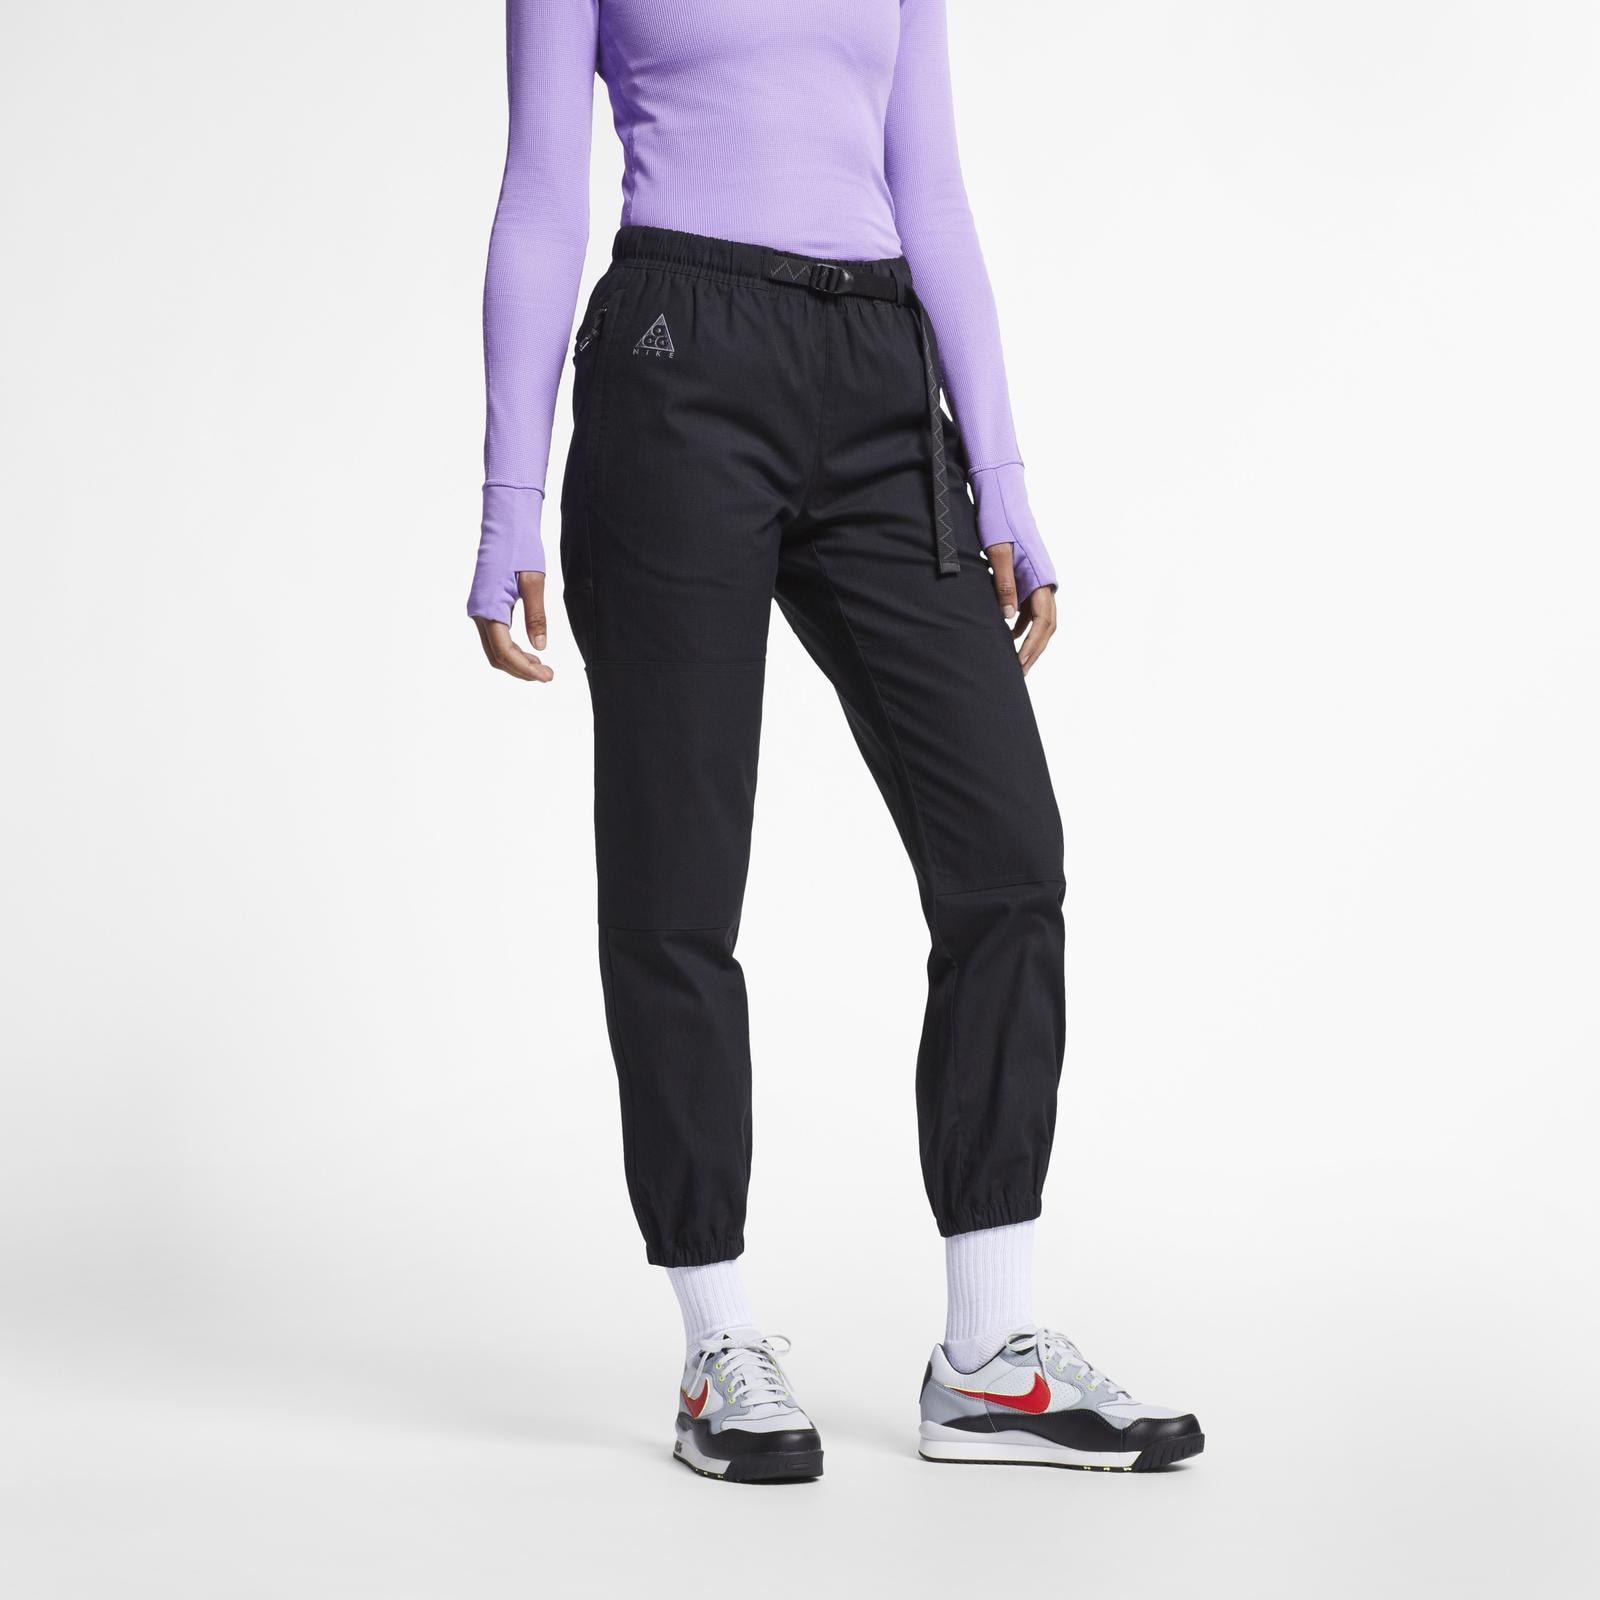 Nike Sportswear ACG 發佈 2019 春季系列 Lookbook